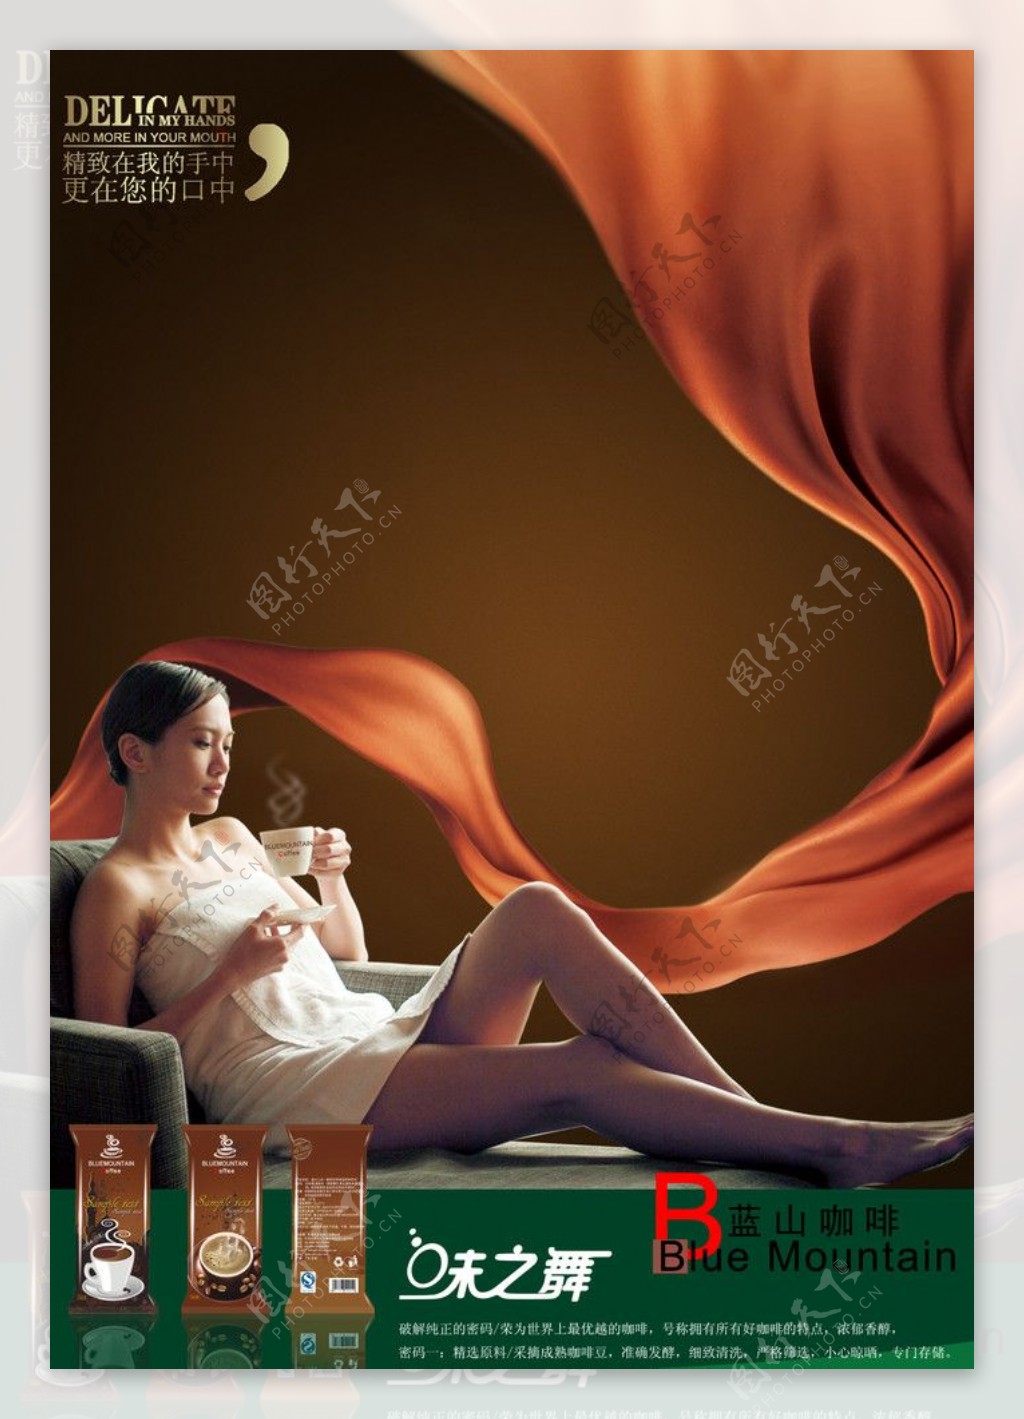 蓝山咖啡广告图片